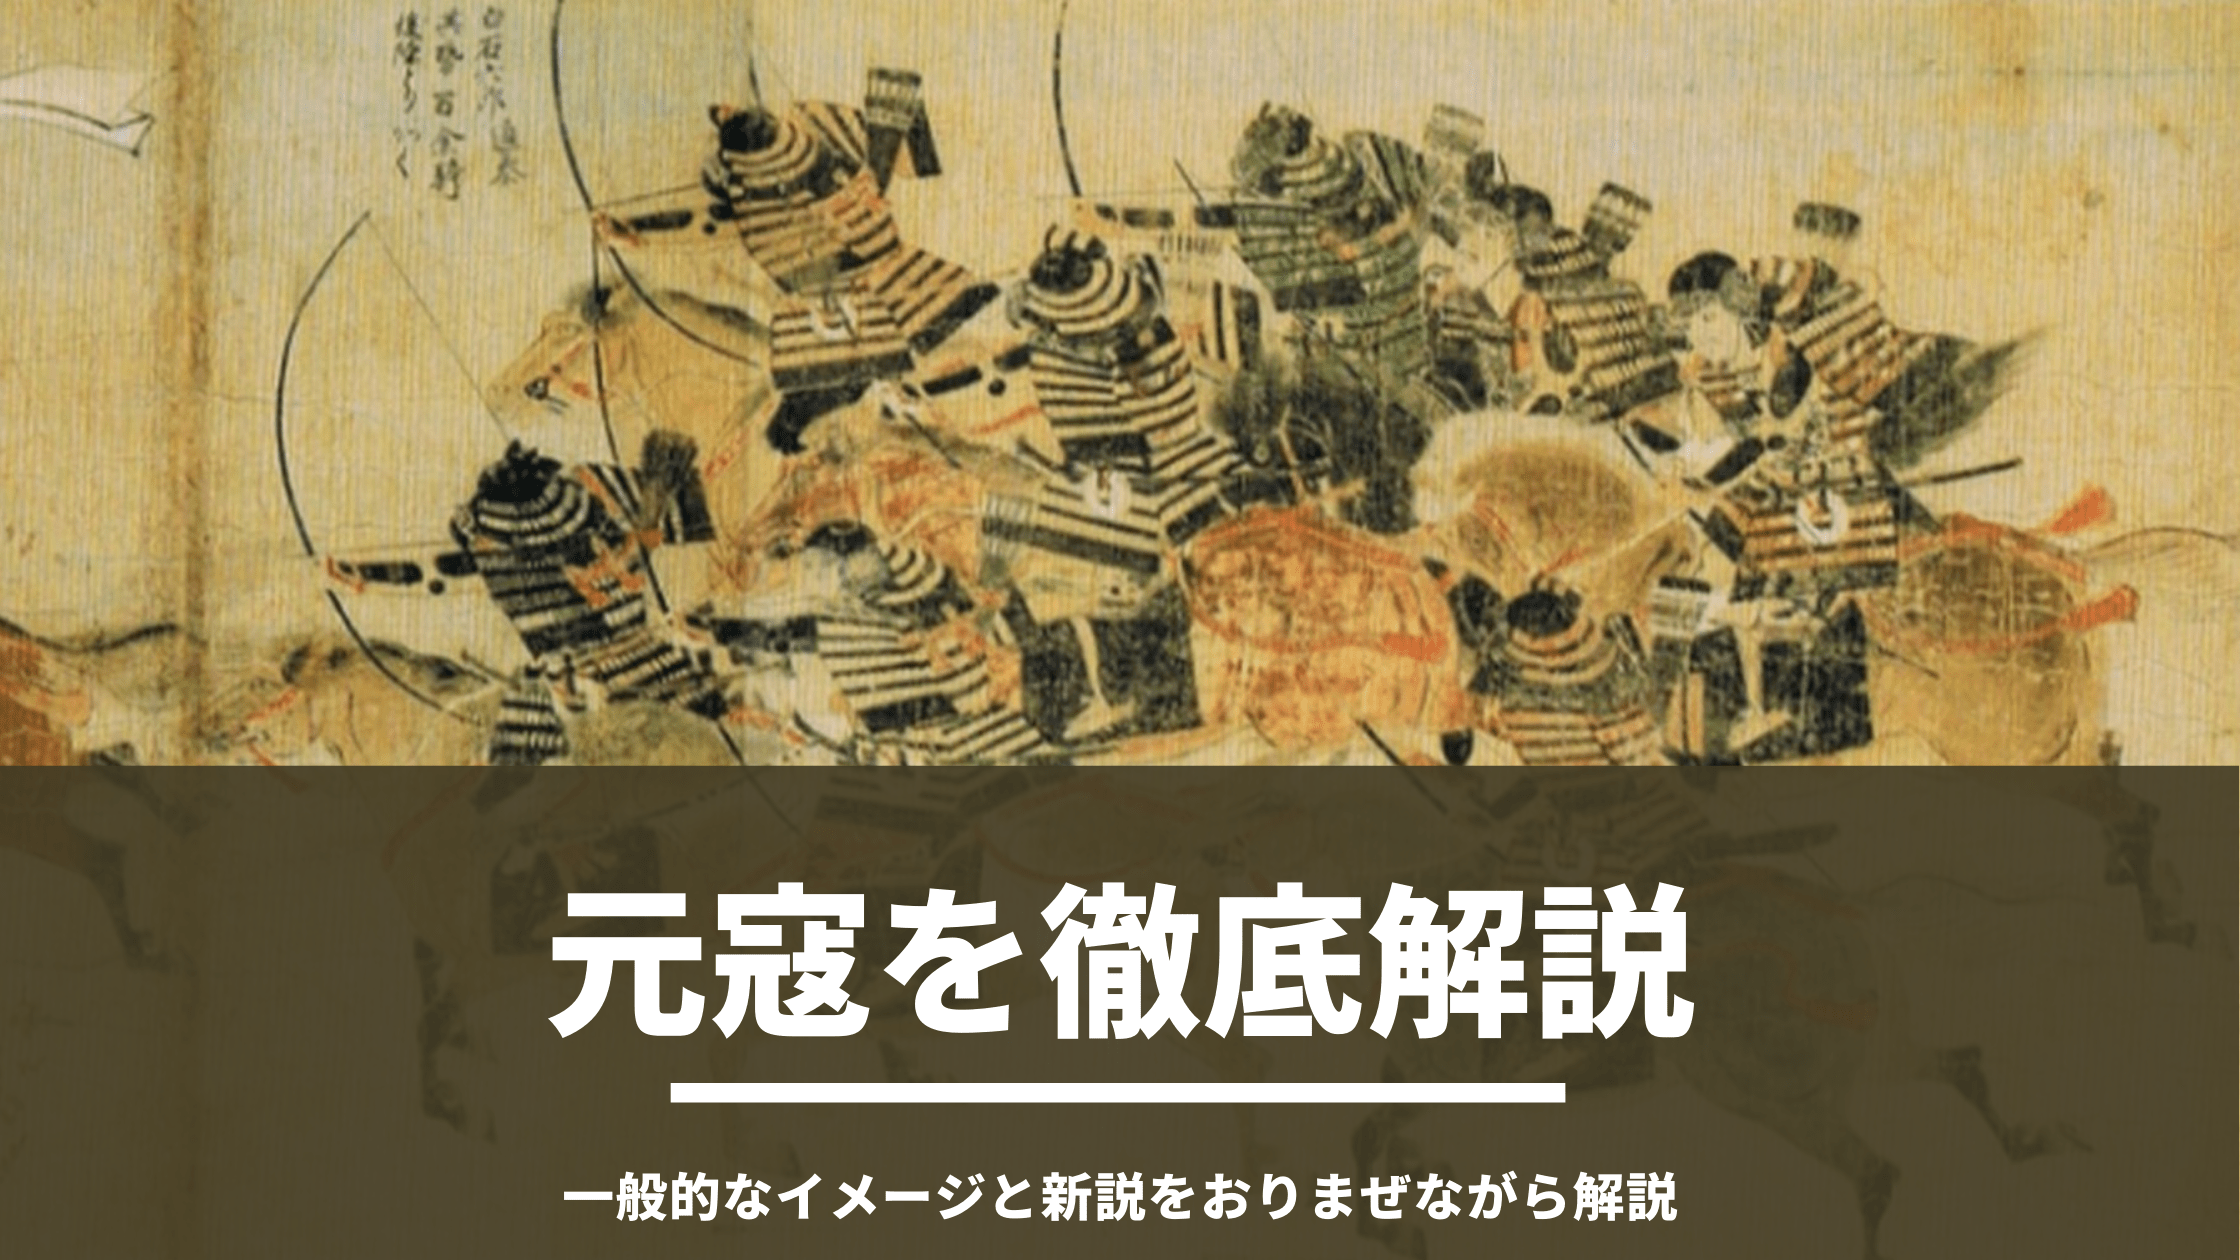 元寇の真実と鎌倉武士 文永の役 弘安の役とはどのような戦いだったのか一般的なイメージと最近の研究を交えて解説します